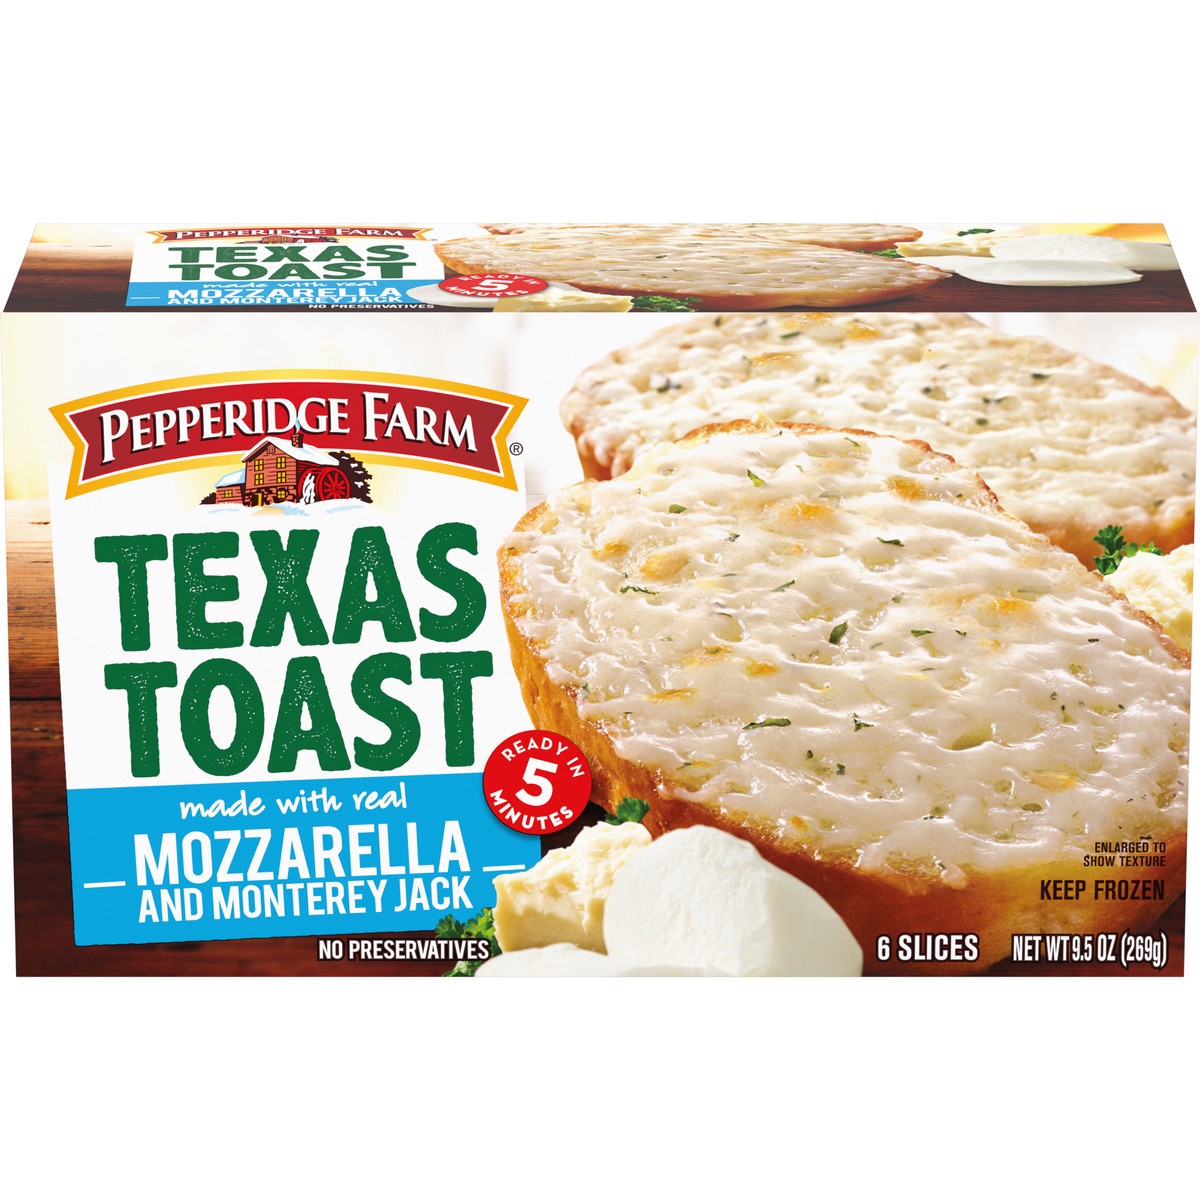 slide 1 of 9, Pepperidge Farm Texas Toast Frozen Mozzarella & Monterey Jack Bread, 6 Slices, 9.5 oz. Box, 9.5 oz